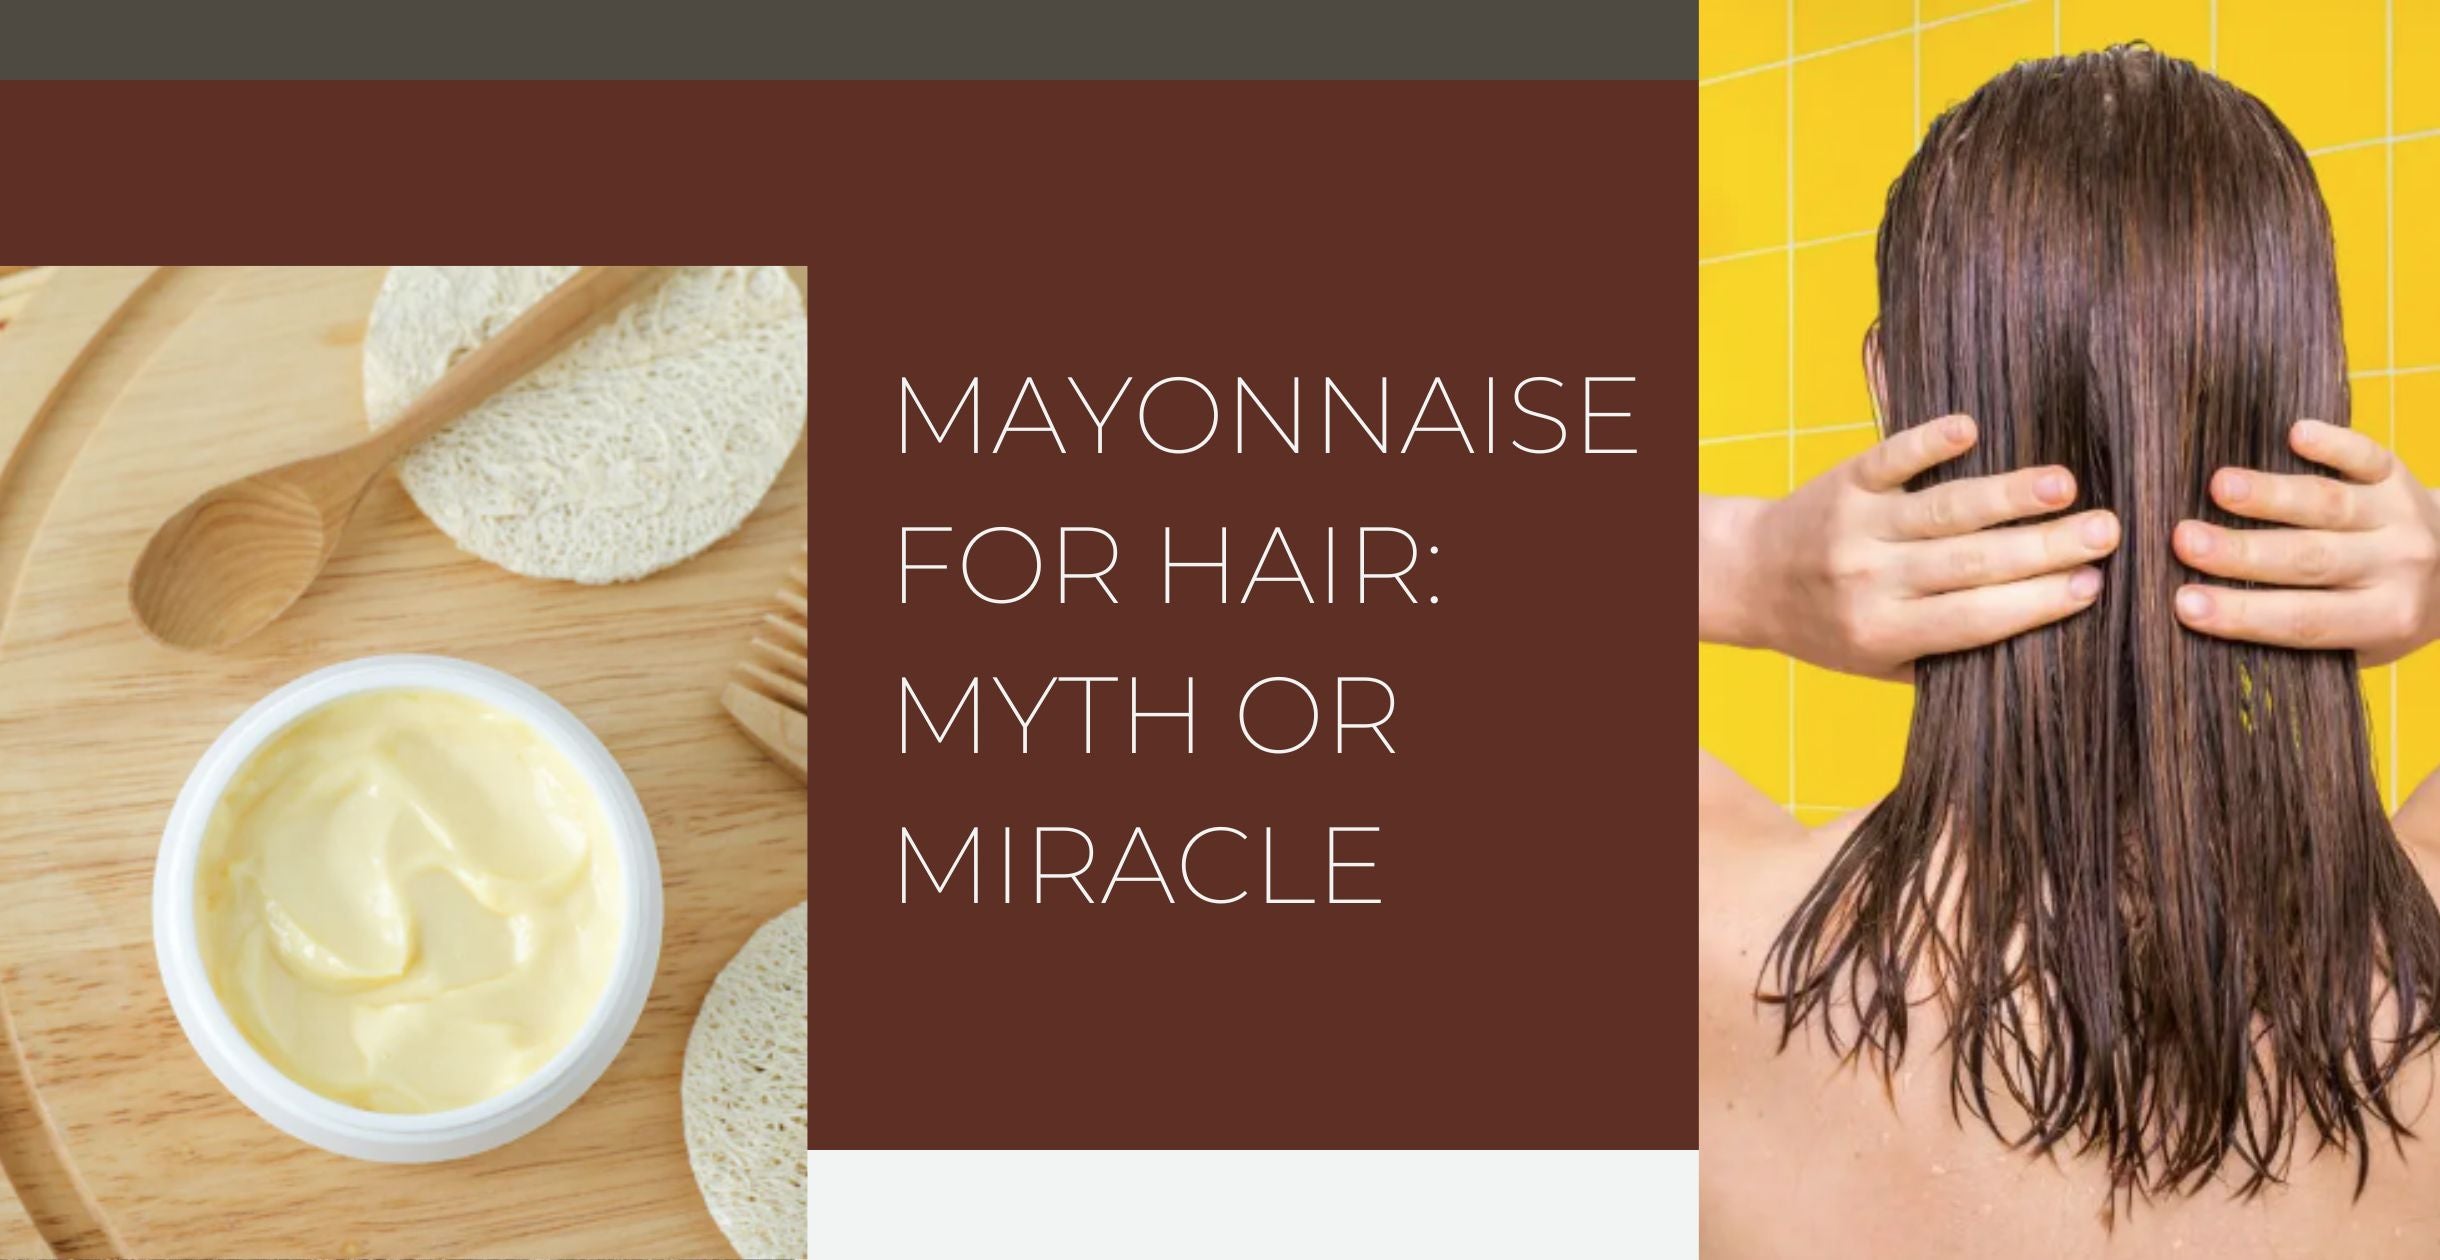 Mayonnaise for Hair: Myth or Miracle?